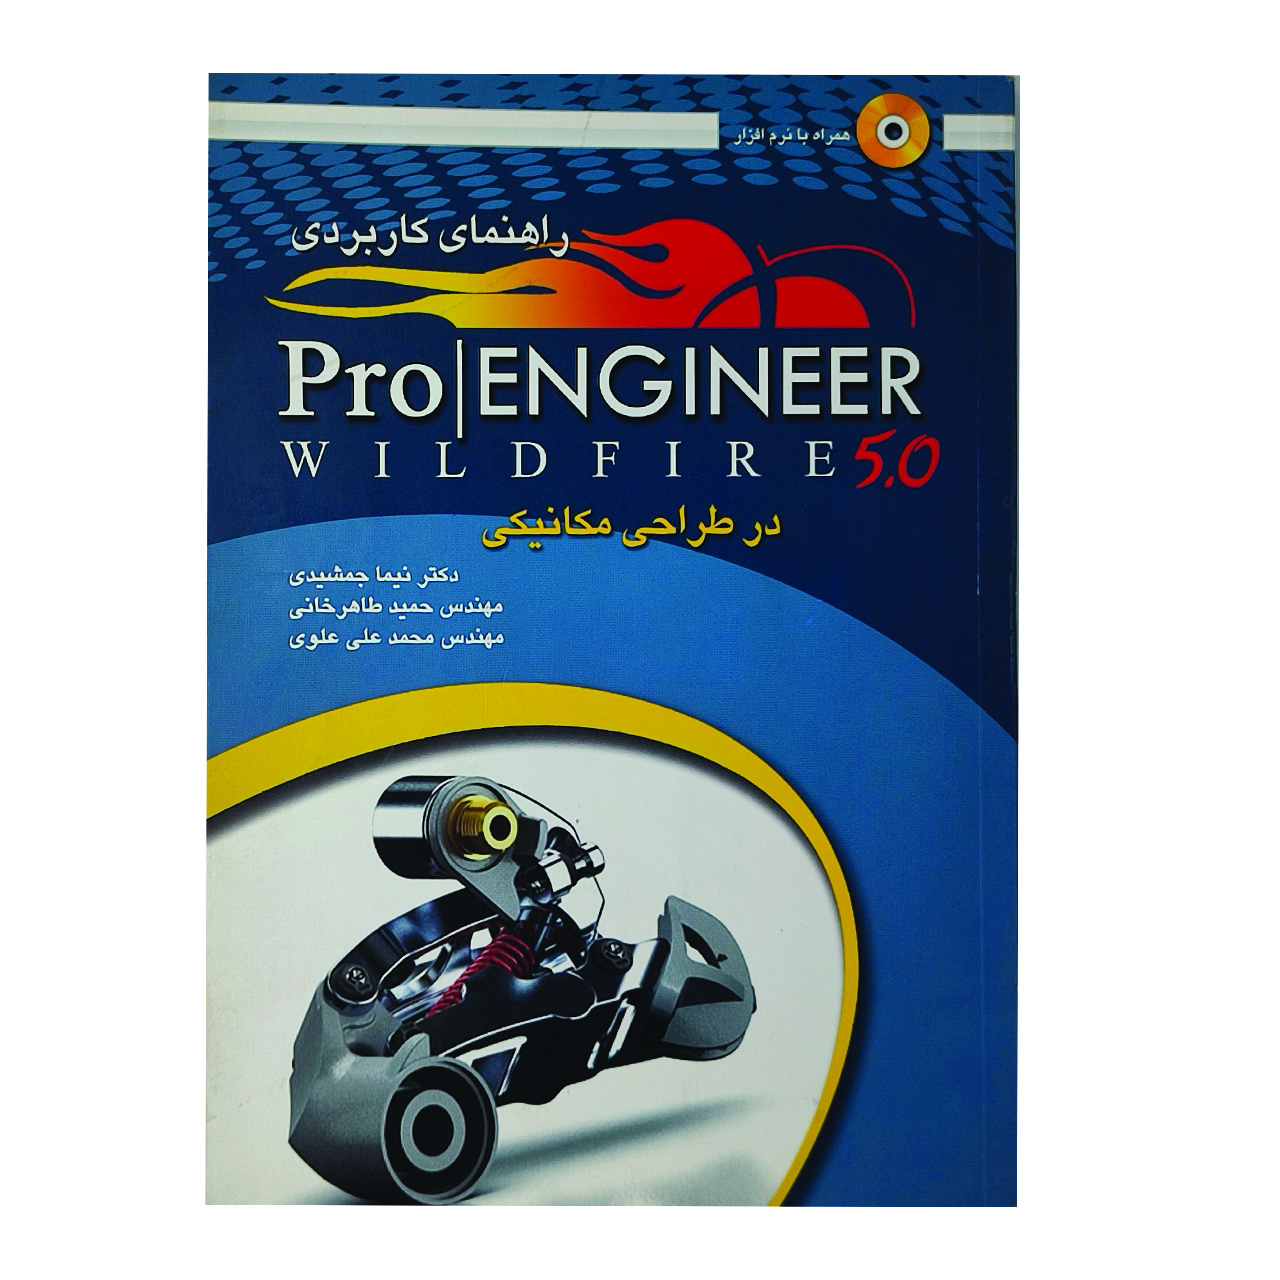 کتاب راهنمای کاربردی pro engineer اثر جمعی از نویسندگان انتشارات عابد 